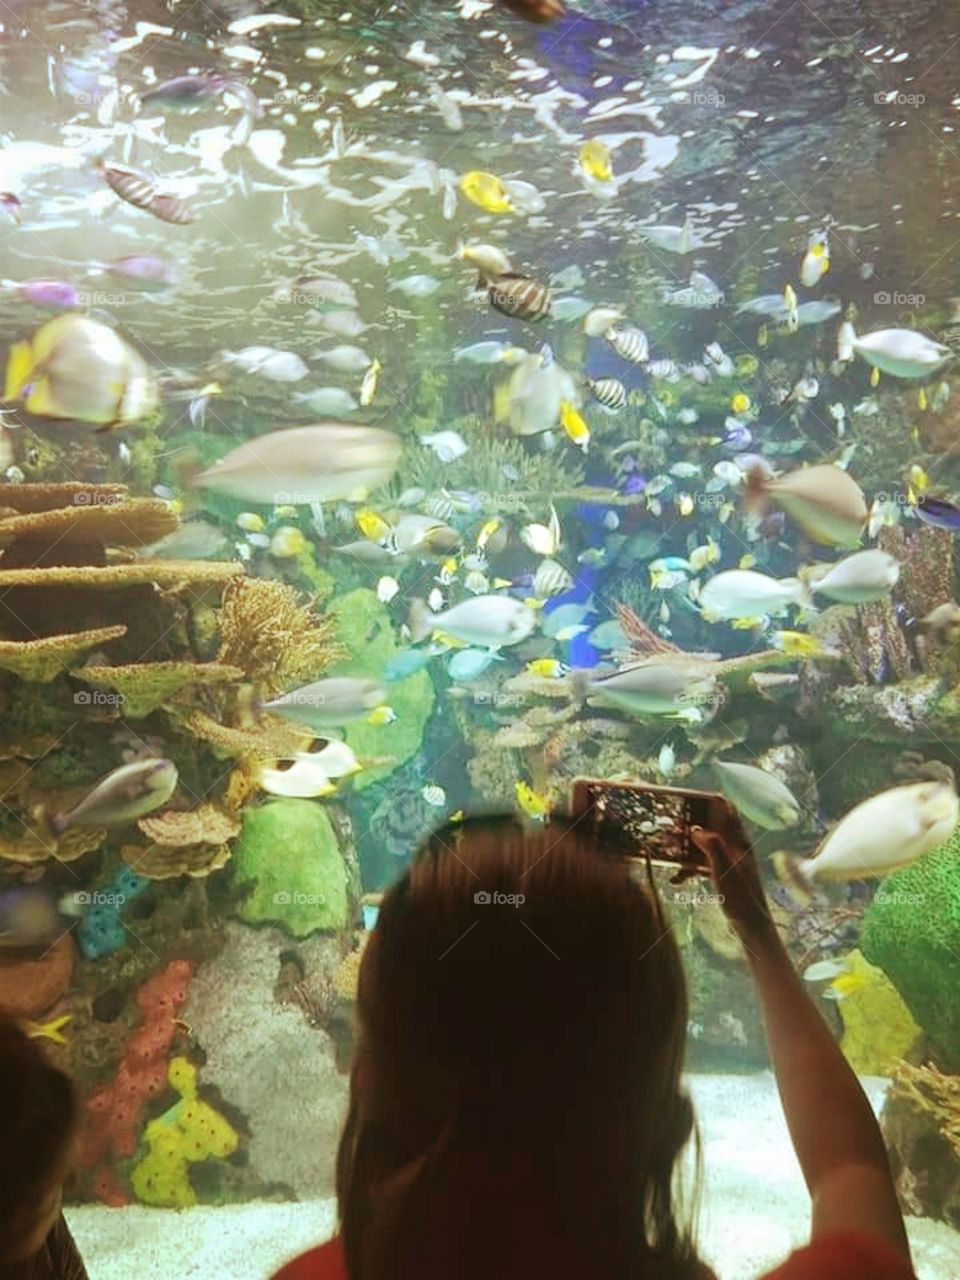 The Aquarium View